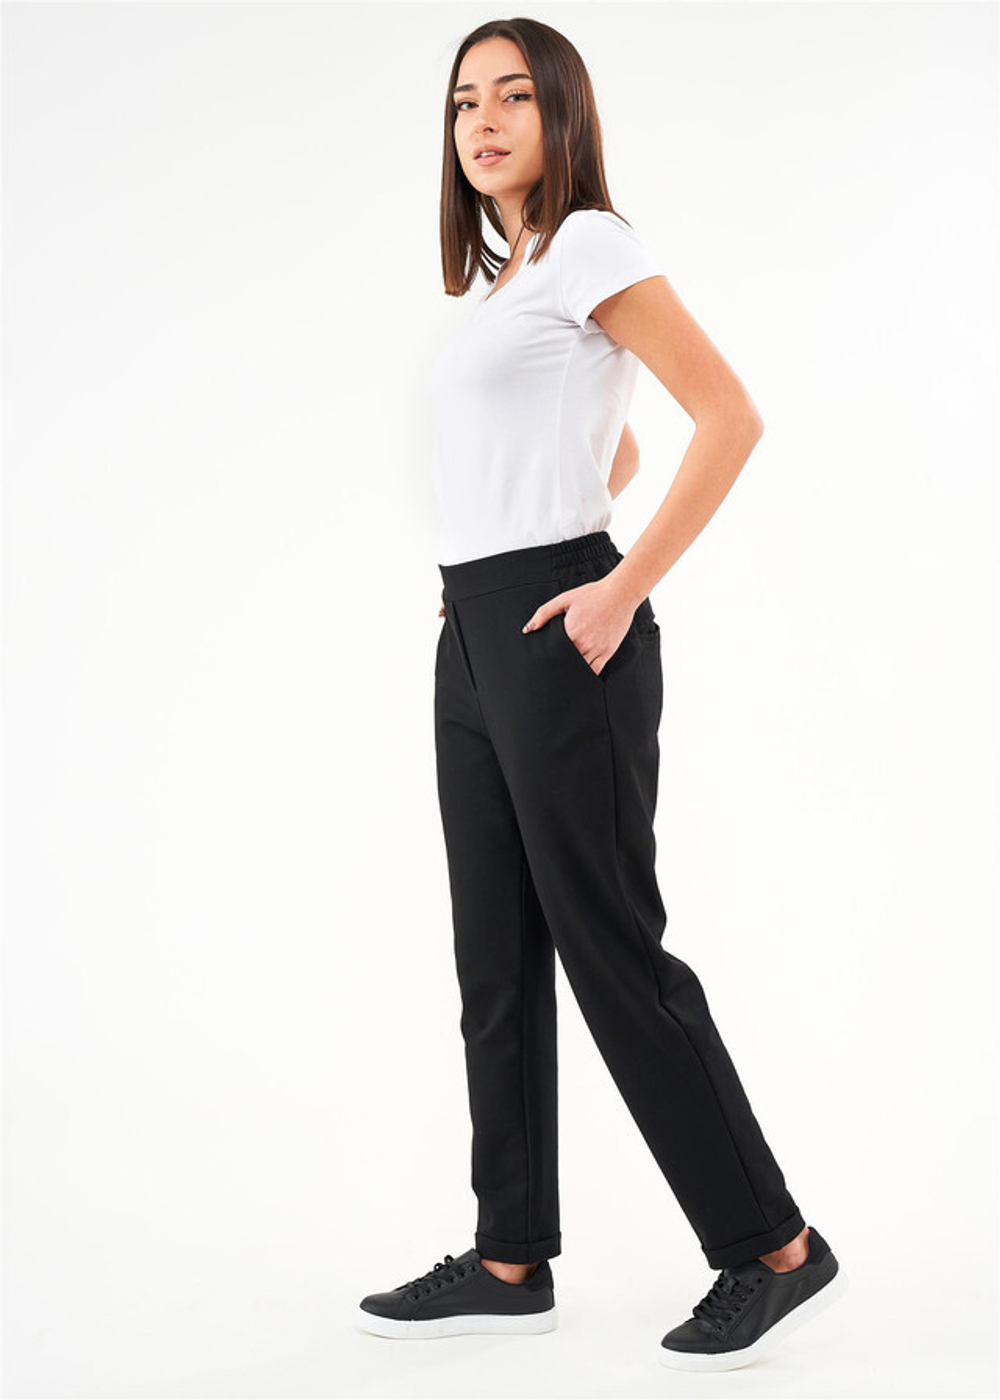 RELAX MODE - Спортивные брюки женские штаны спортивные базовые трикотаж - 6052